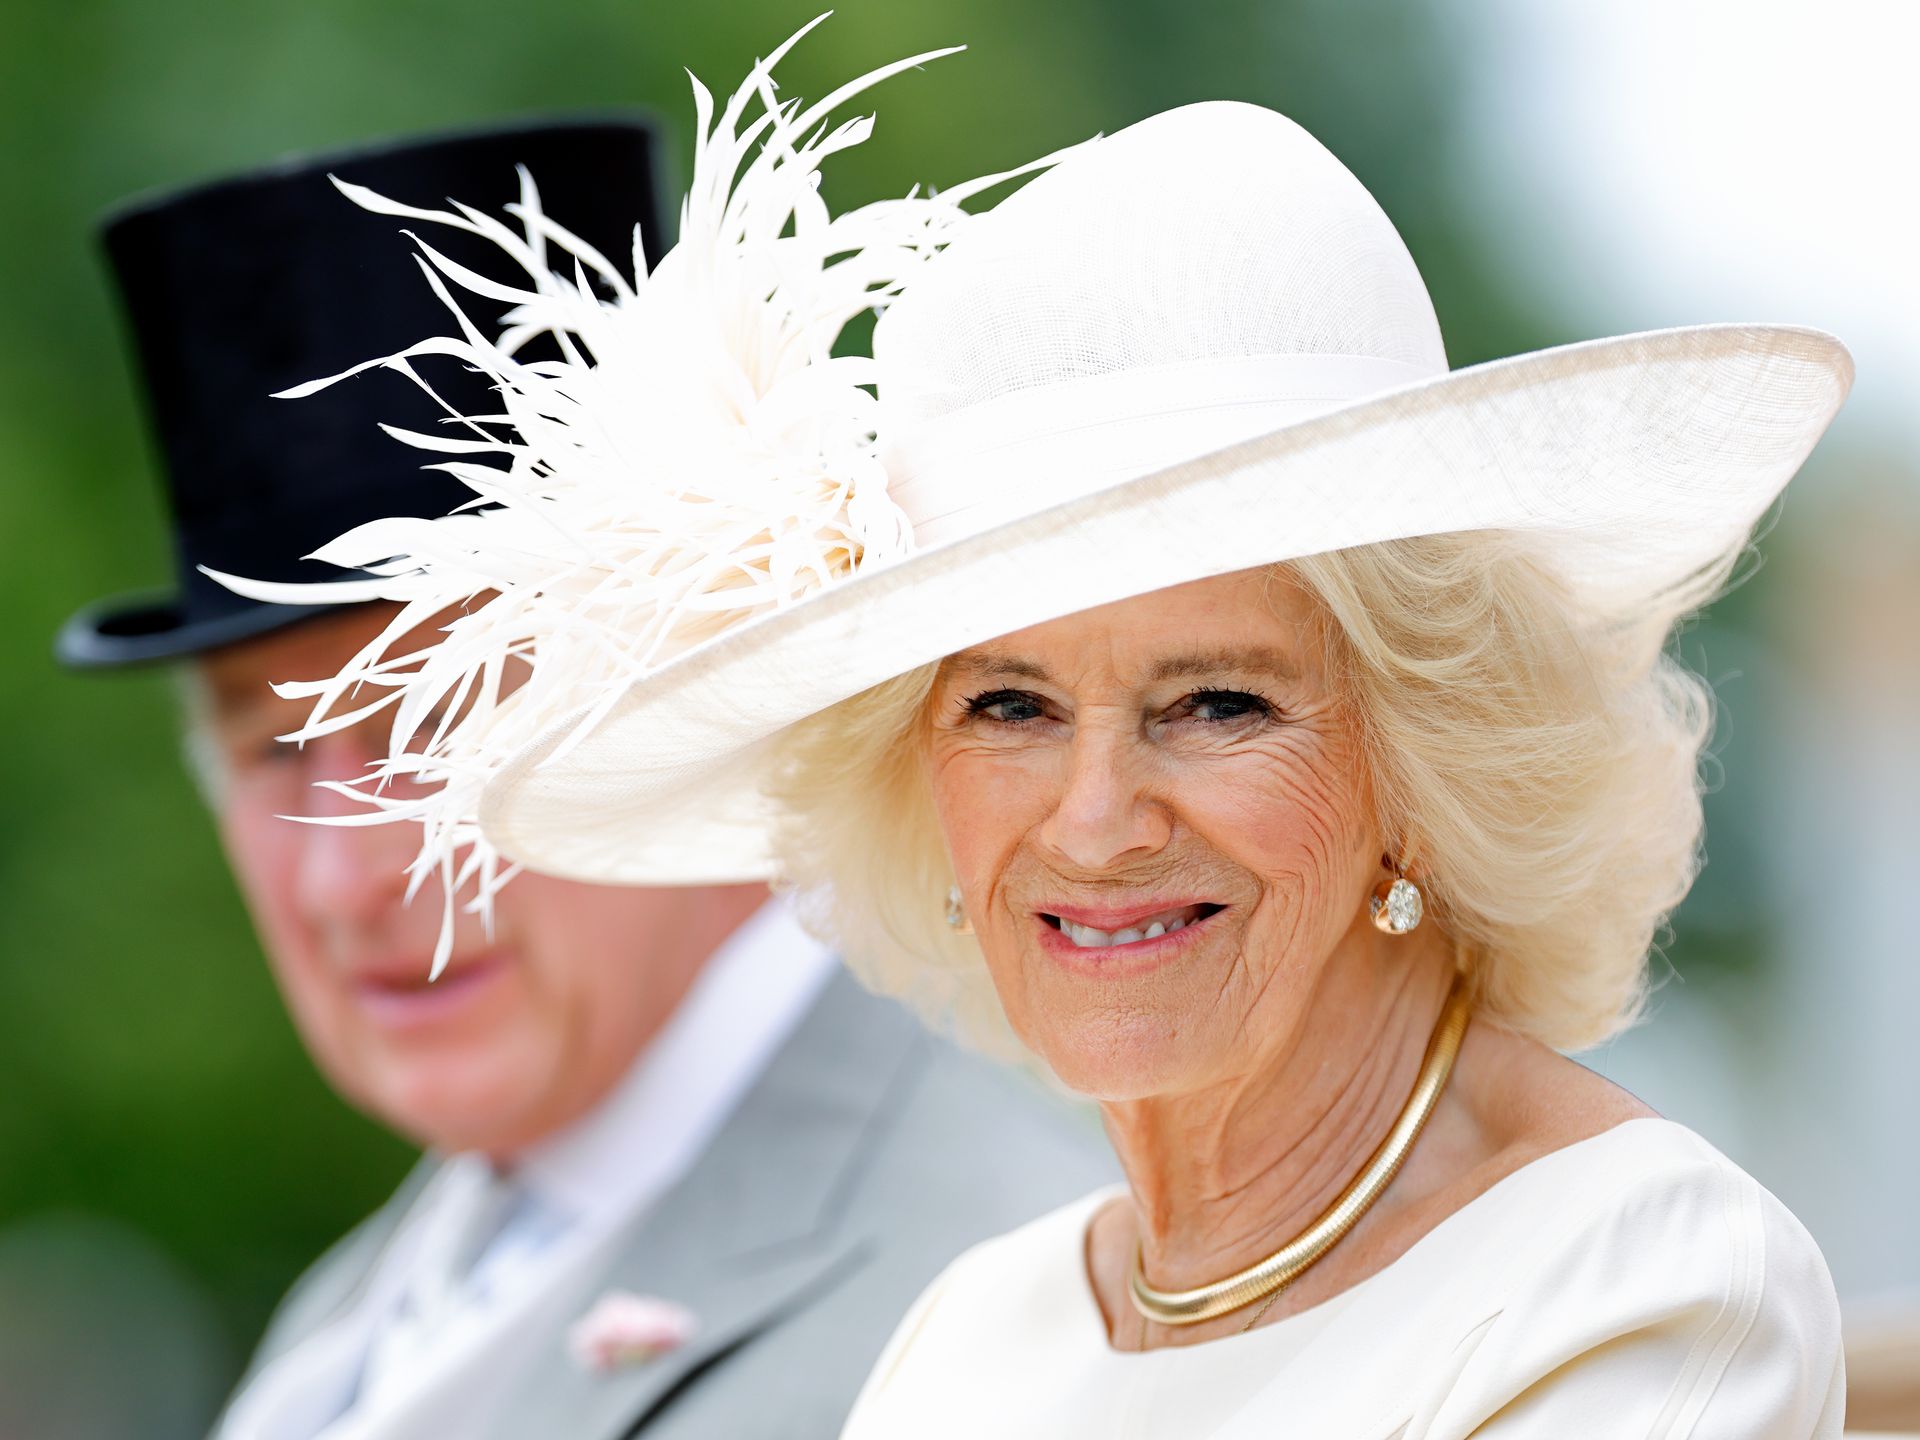 Queen Camilla Dons Classic Chanel Cap-Toe Pumps at Buckingham